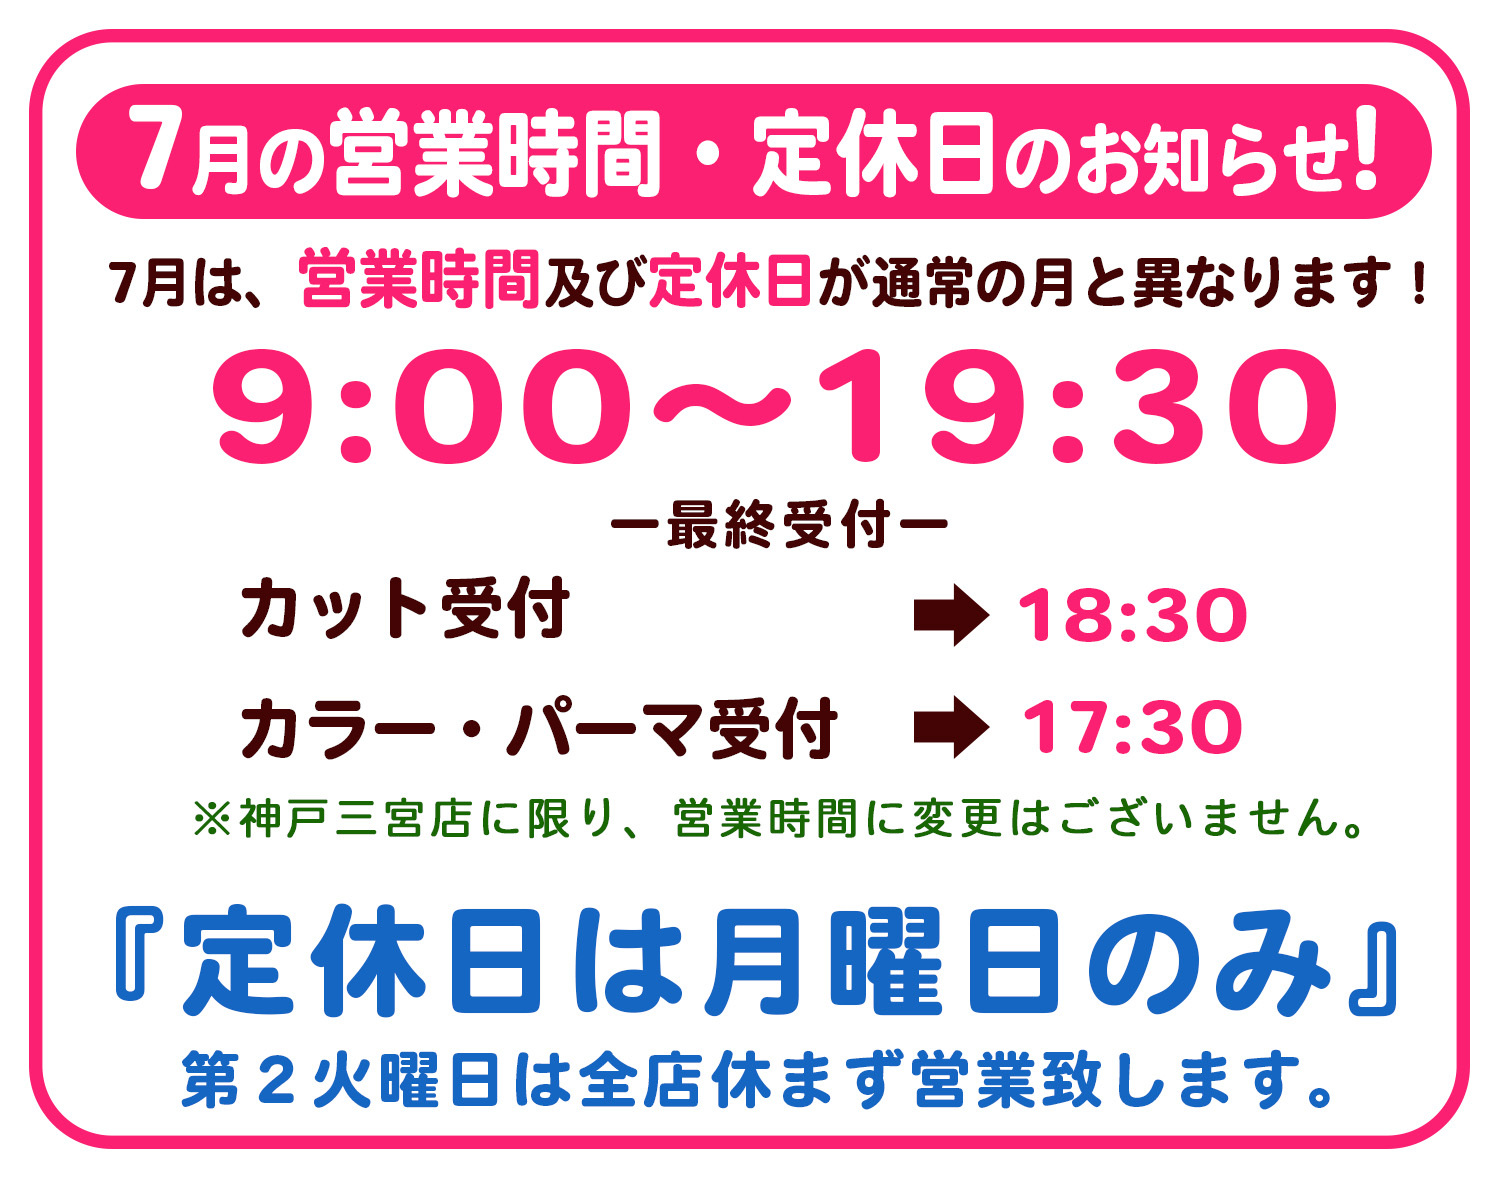 7月営業時間変更のお知らせ 神戸の美容院パシフィックダズール 神戸三宮 西区 垂水区